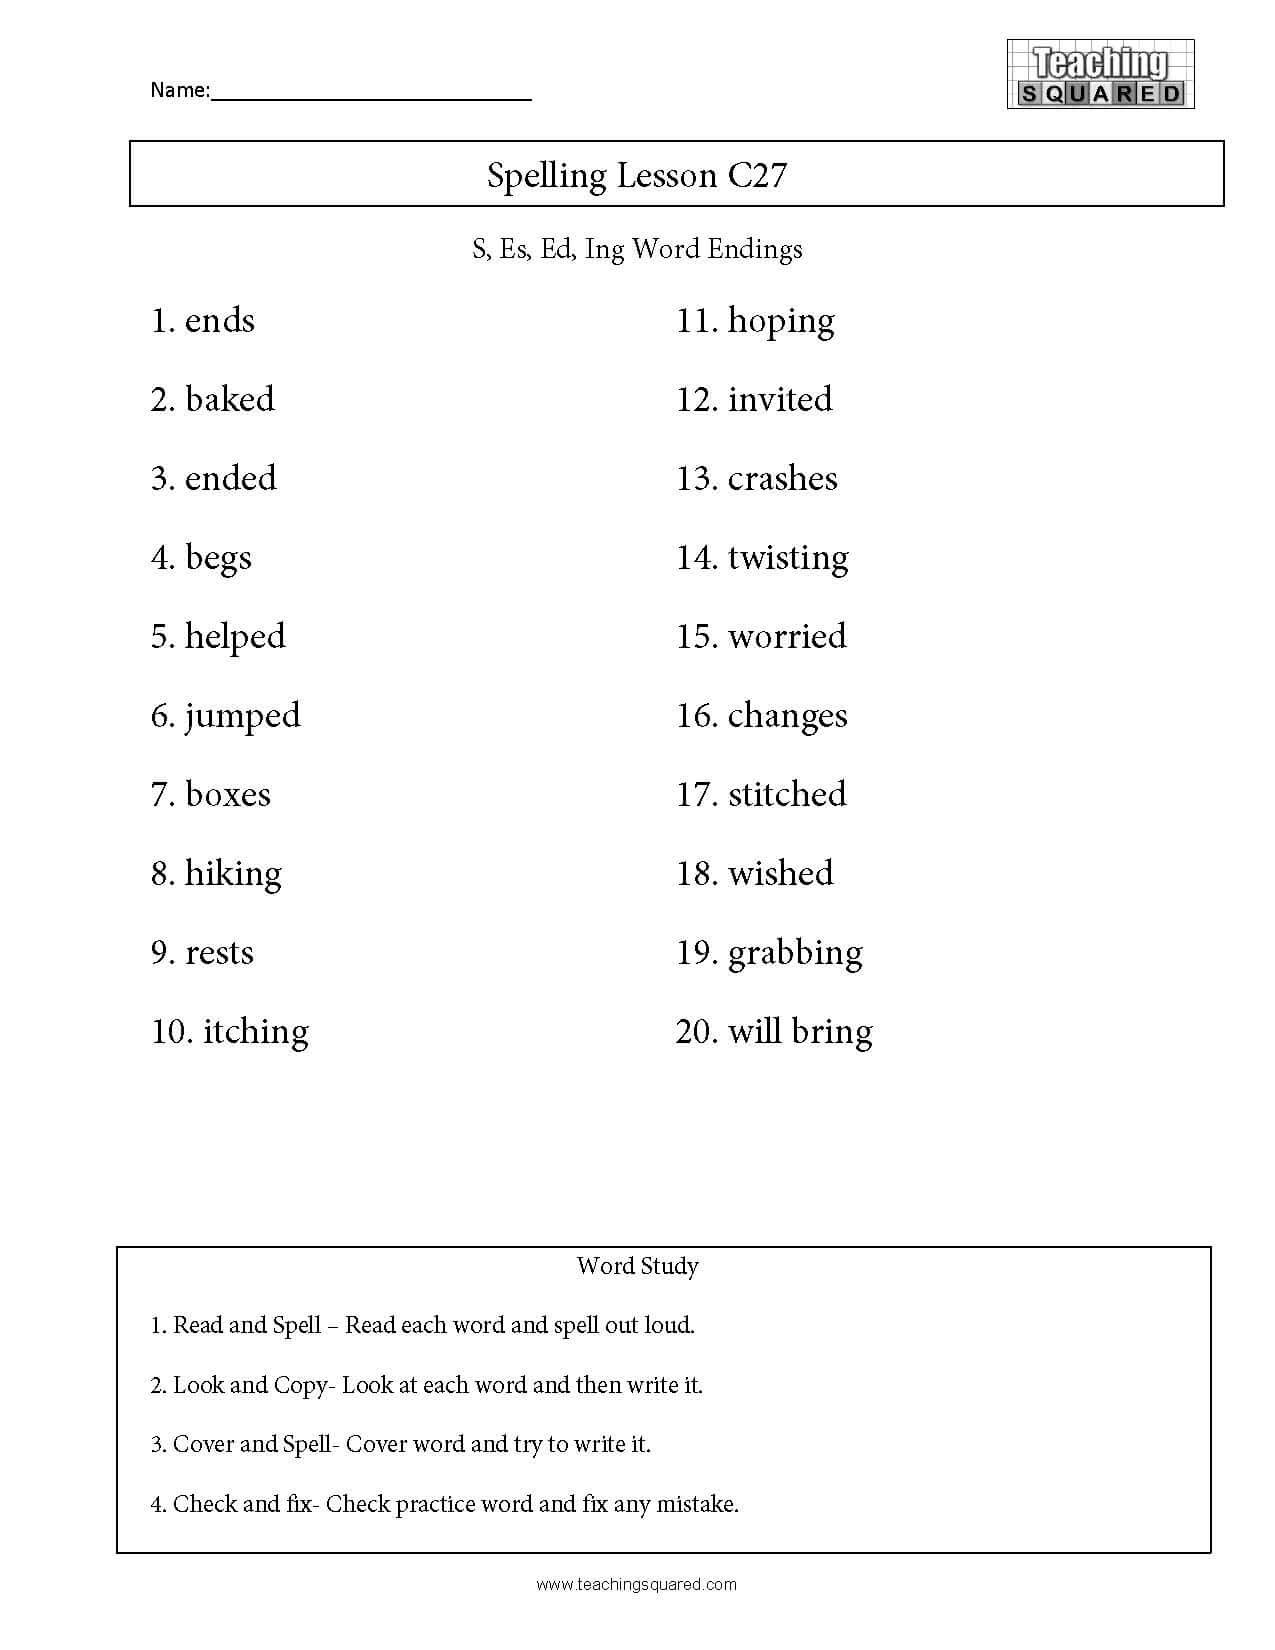 Ing Worksheets Grade 1 Spelling List C27 S Ed Ing Word Endings Teaching Squared